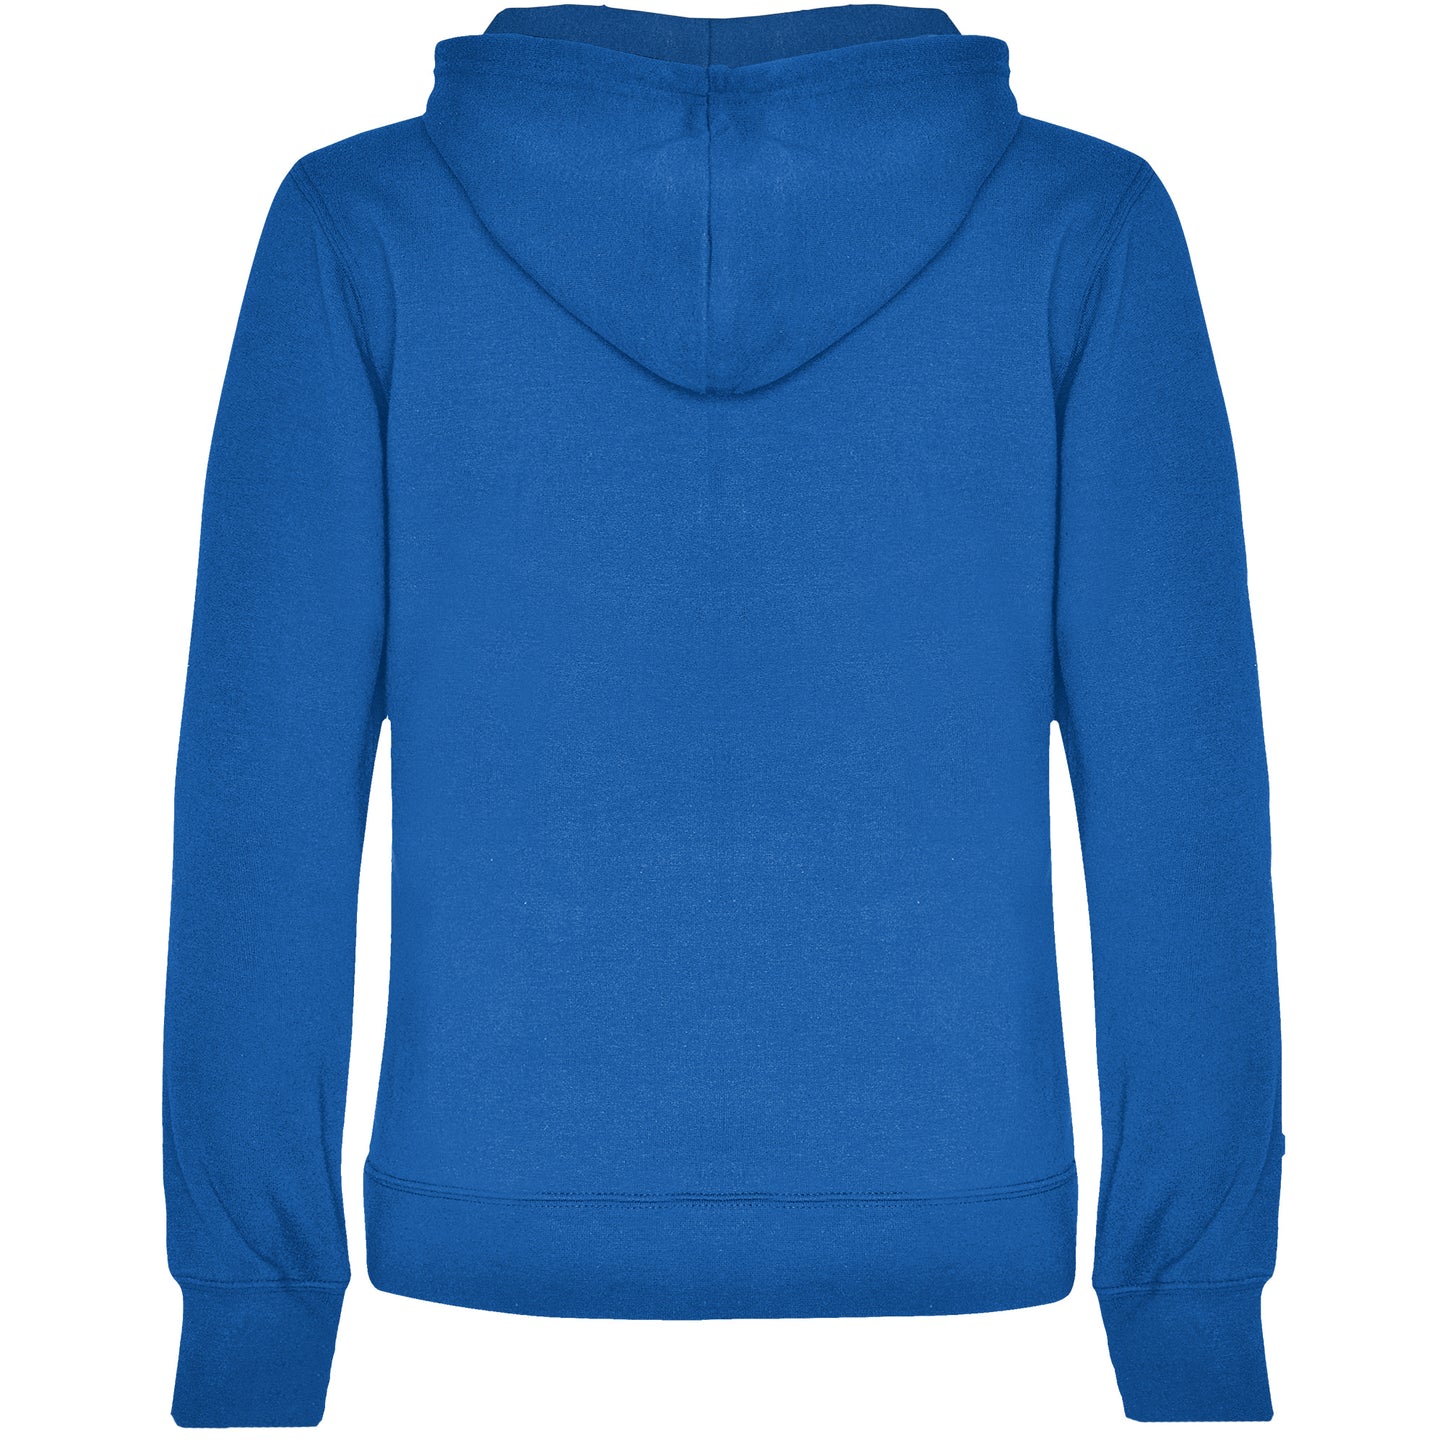 Urban hoodie dame Blå